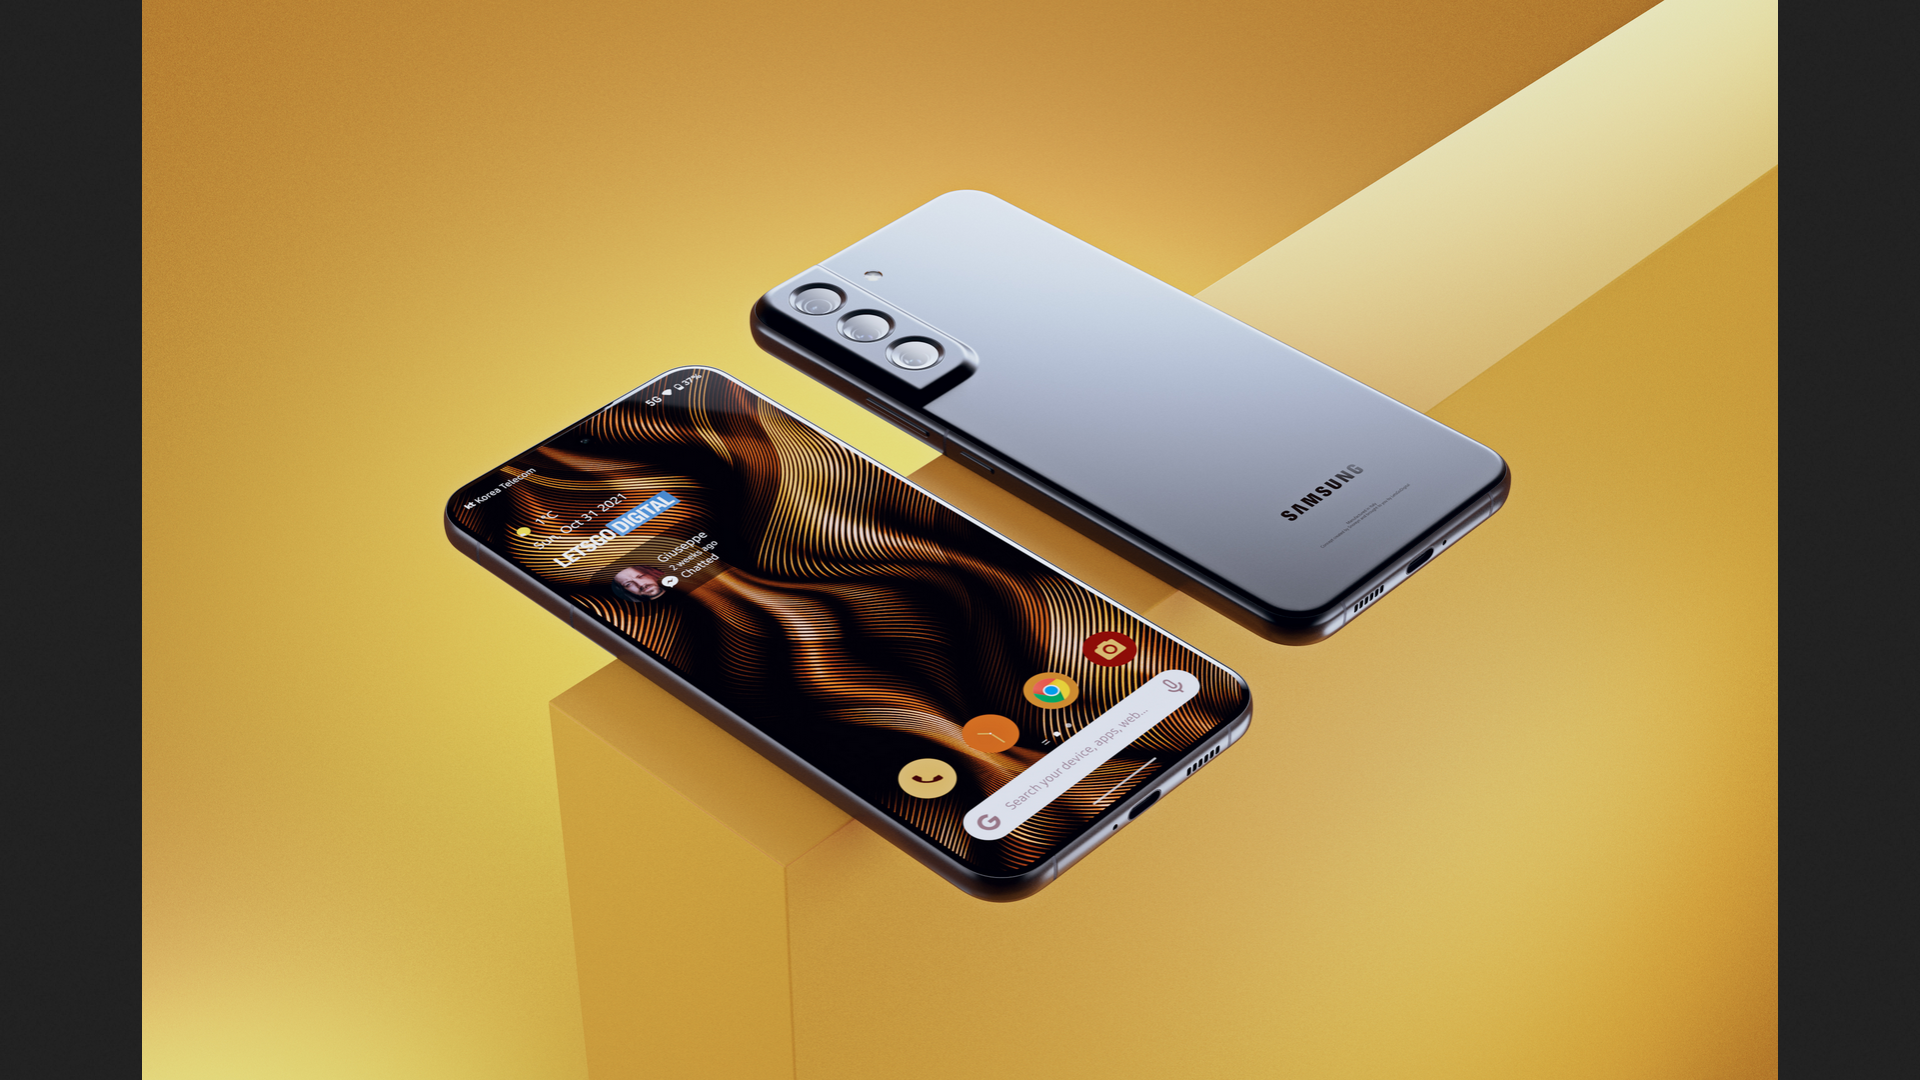 Bạn quan tâm đến thiết kế của Samsung Galaxy S22? Hãy xem ngay những mẫu thiết kế độc đáo và đa dạng trên trang web của chúng tôi để đánh giá và lựa chọn cho mình một chiếc điện thoại hoàn hảo nhất.